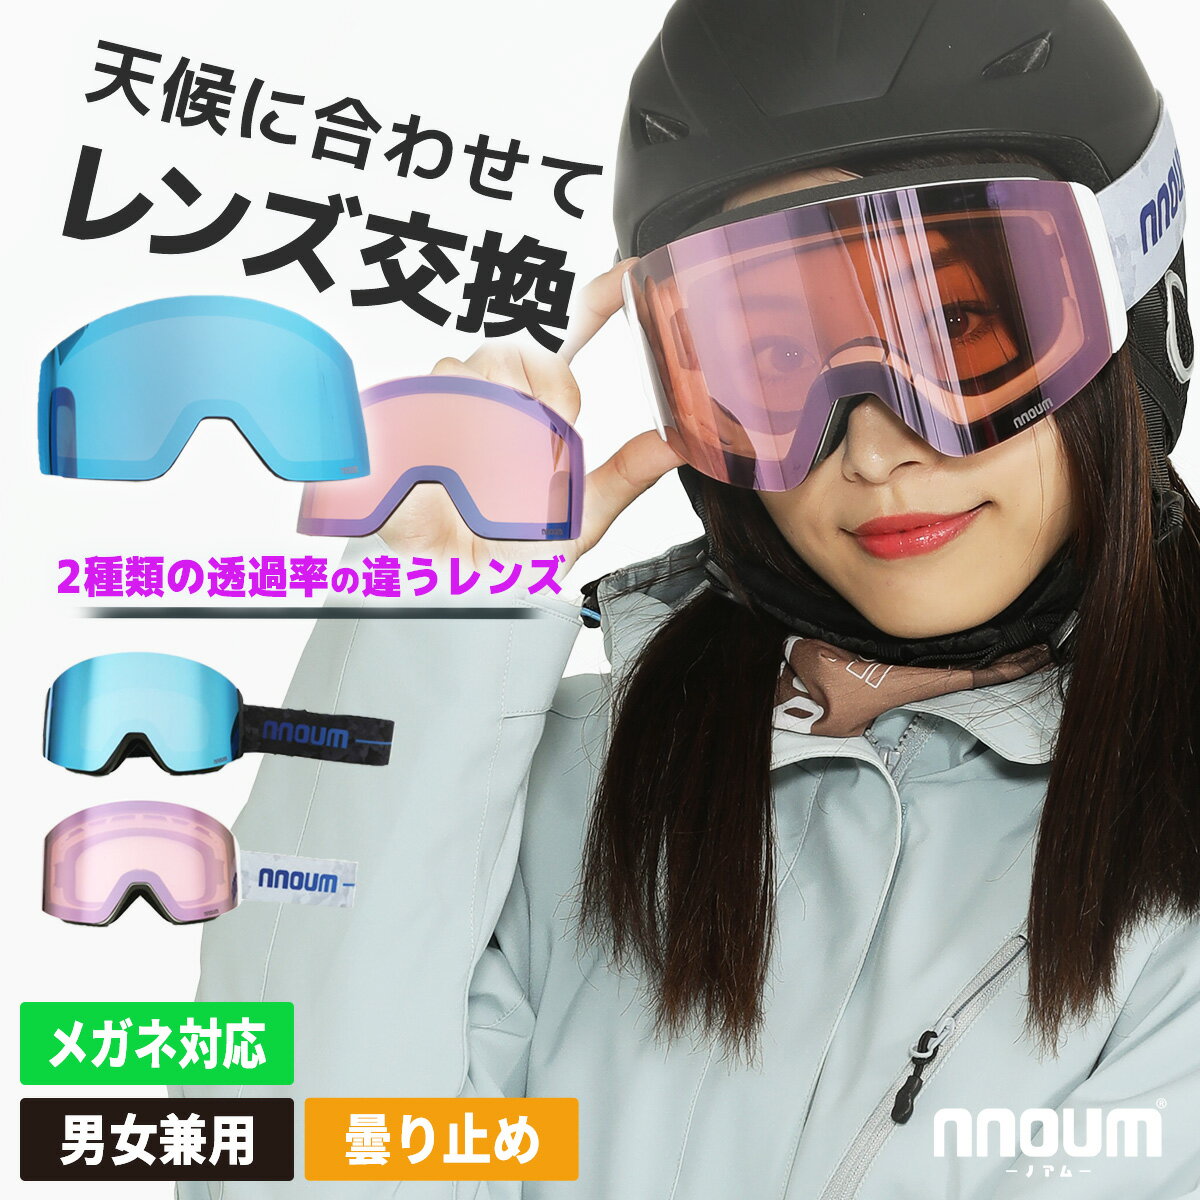 スキー ゴーグル スノーボード スノボー スノボ メンズ レディース メガネ 眼鏡対応 NNOUM ノアム 曇り止加工 スペア…